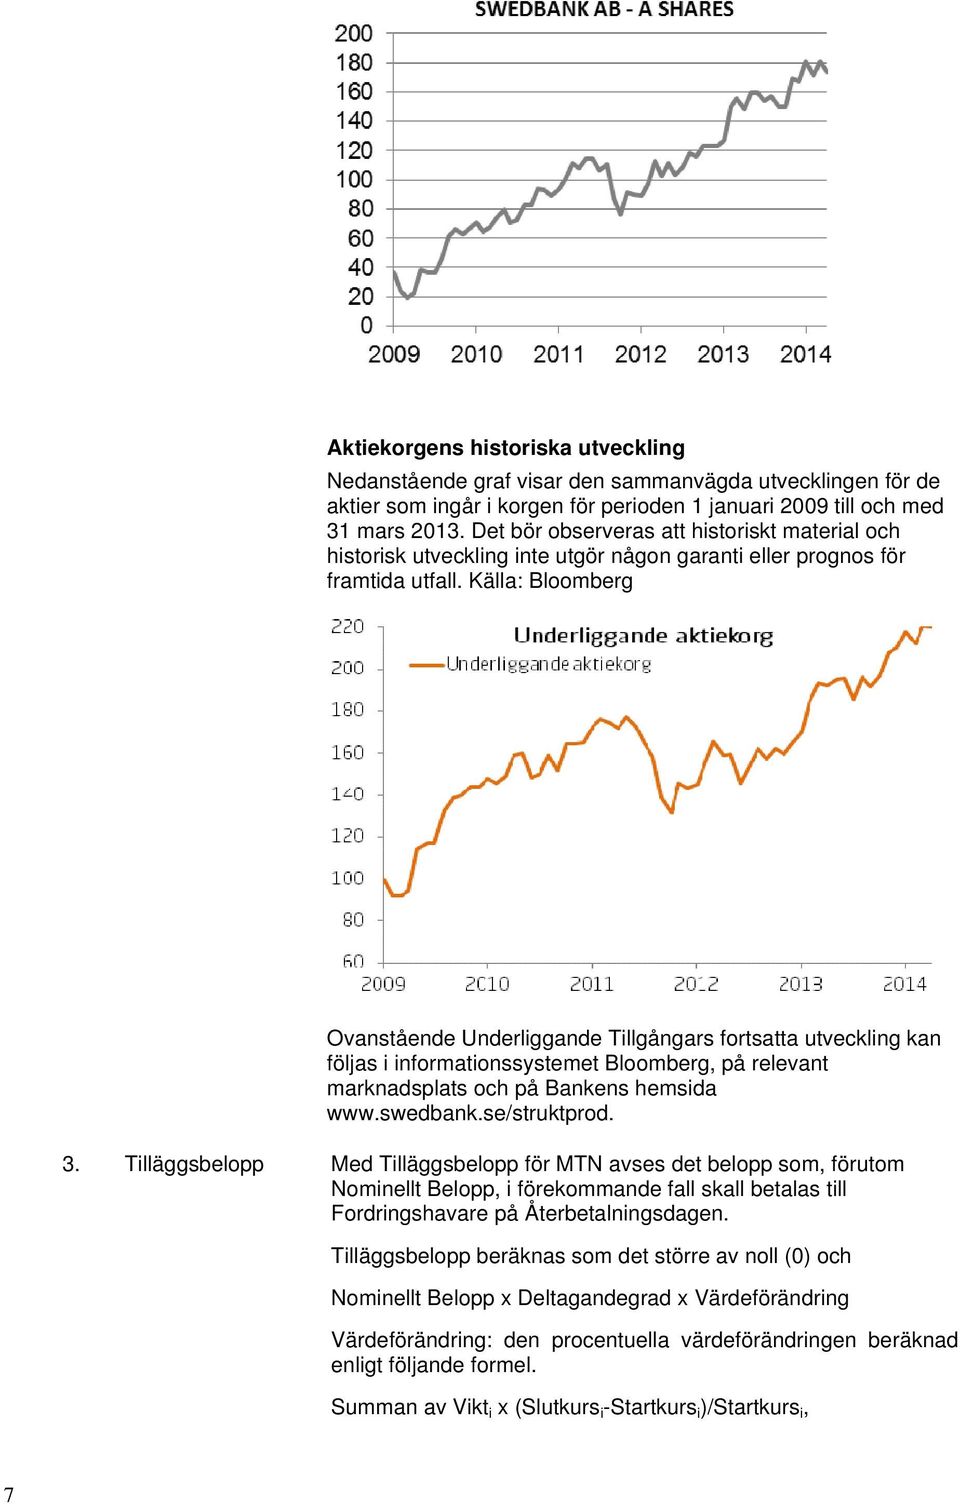 Källa: Bloomberg Ovanstående Underliggande Tillgångars fortsatta utveckling kan följas i informationssystemet Bloomberg, på relevant marknadsplats och på Bankens hemsida www.swedbank.se/struktprod. 3.